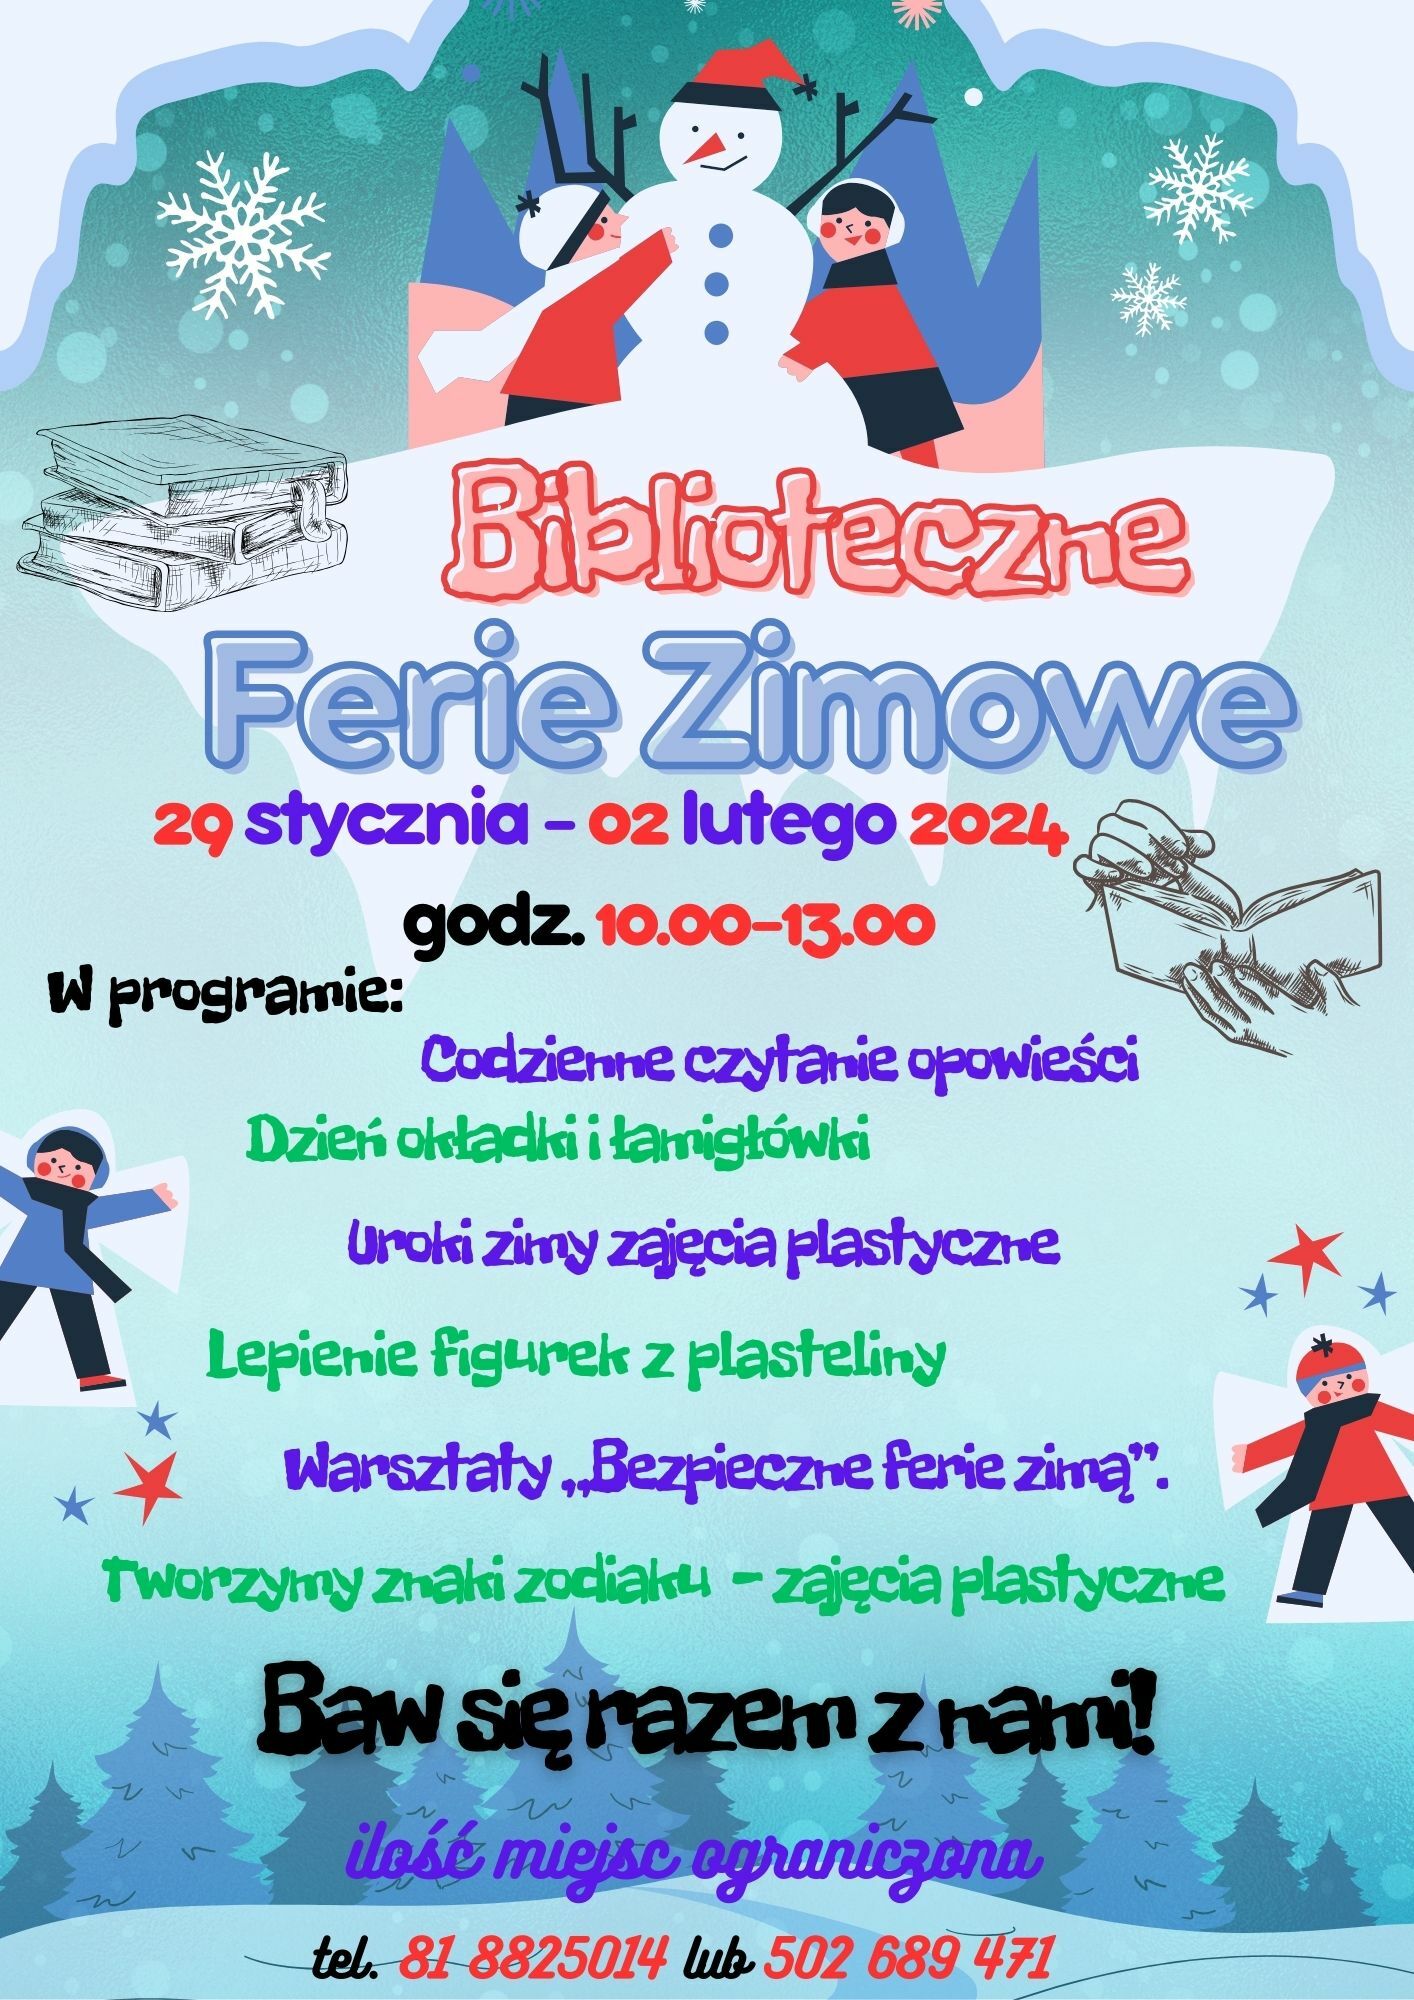 Plakat wydarzenia "Biblioteczne Ferie zimowe" od 29 stycznia do 2 lutego z kolorową grafiką przedstawiającą bałwana, dzieci i płatki śniegu, zawierający informacje o programie i kontakt.